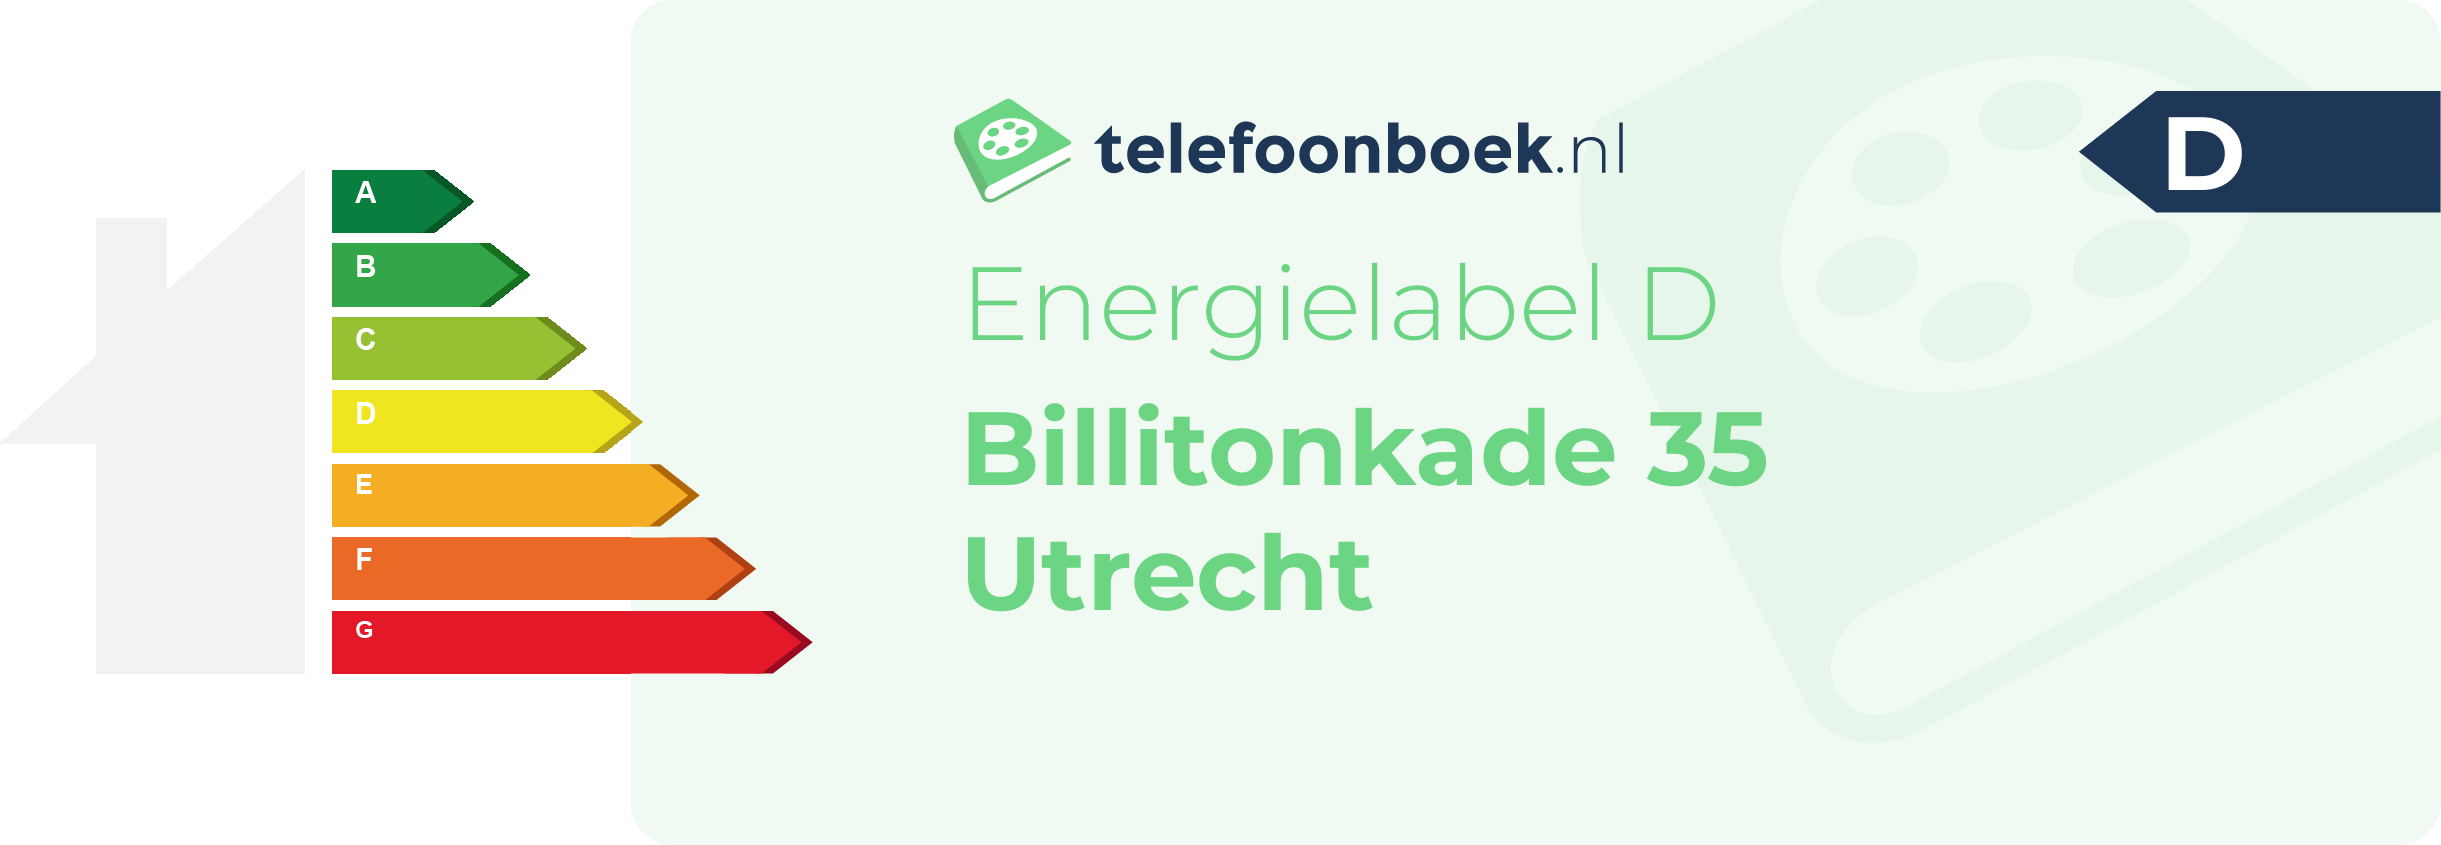 Energielabel Billitonkade 35 Utrecht